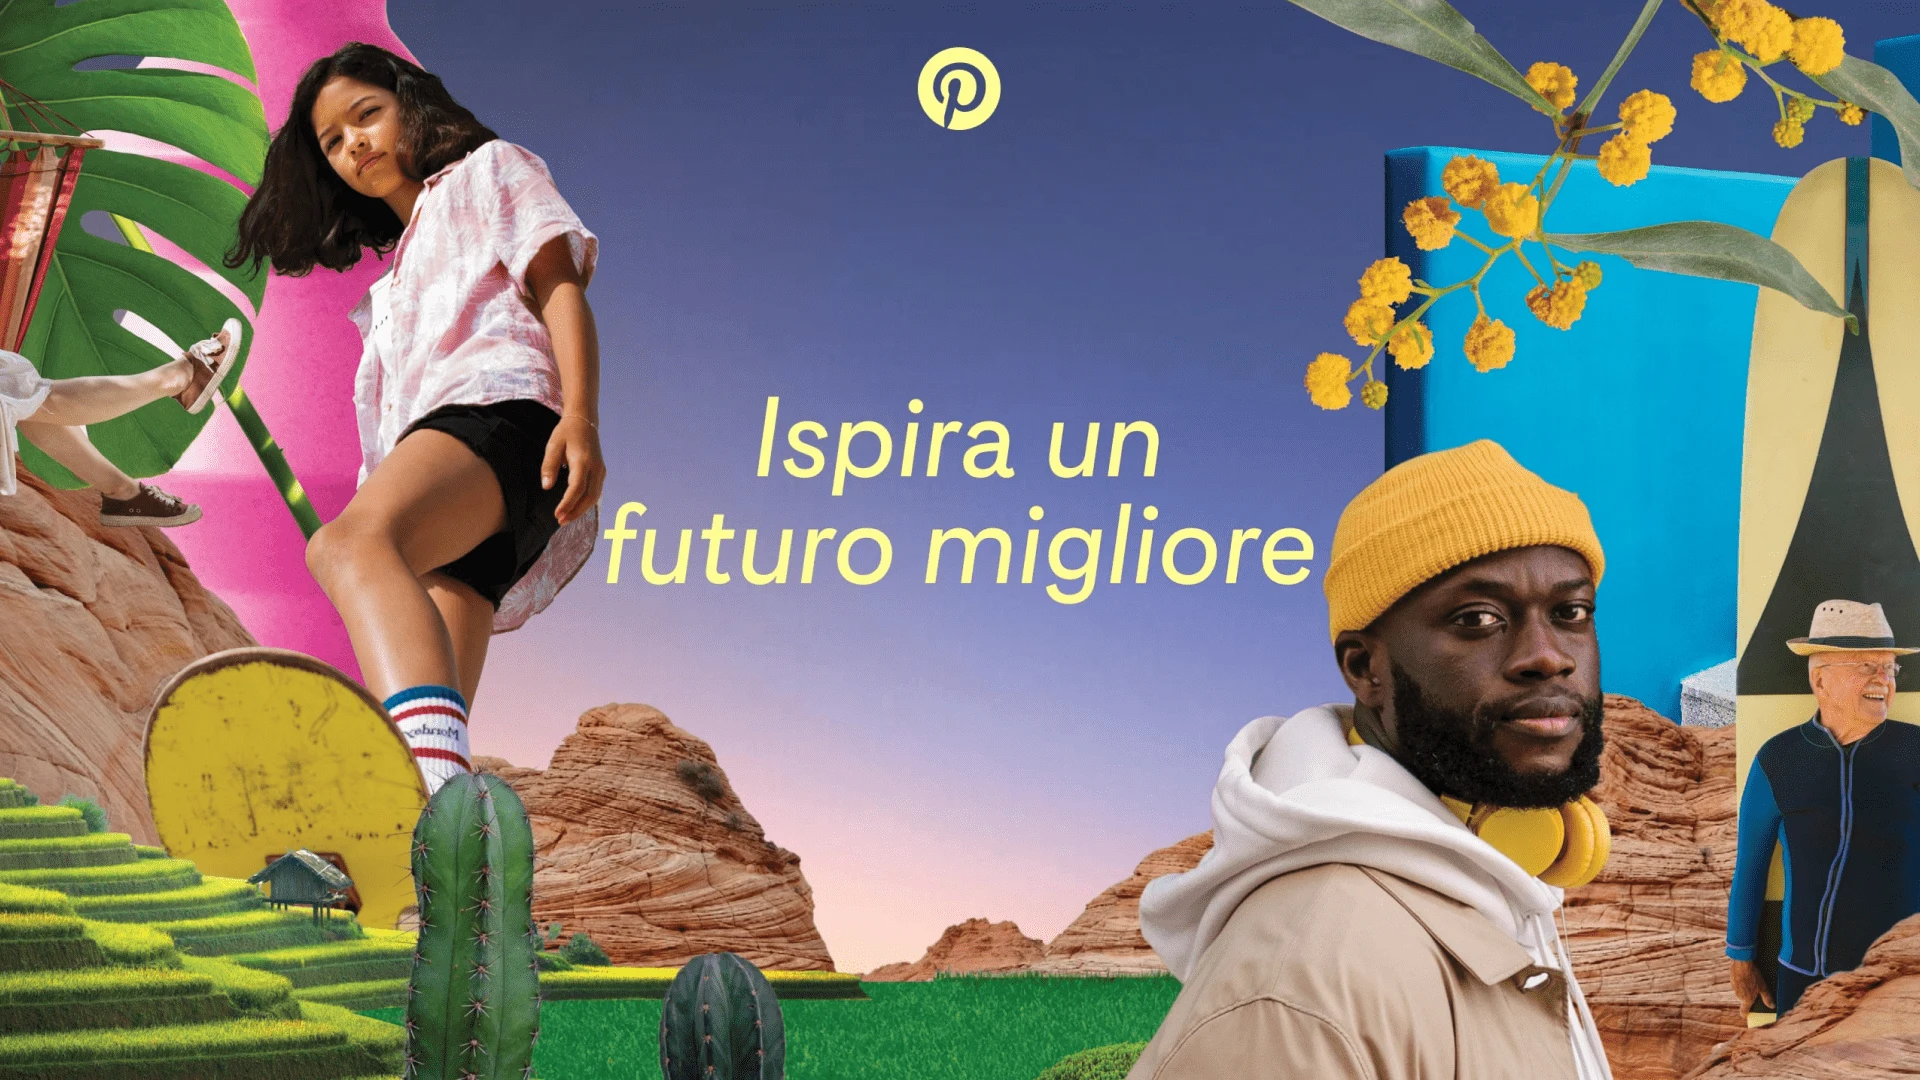 Un collage di immagini colorate ispirate a Pinterest circonda le parole "Ispira un futuro migliore"